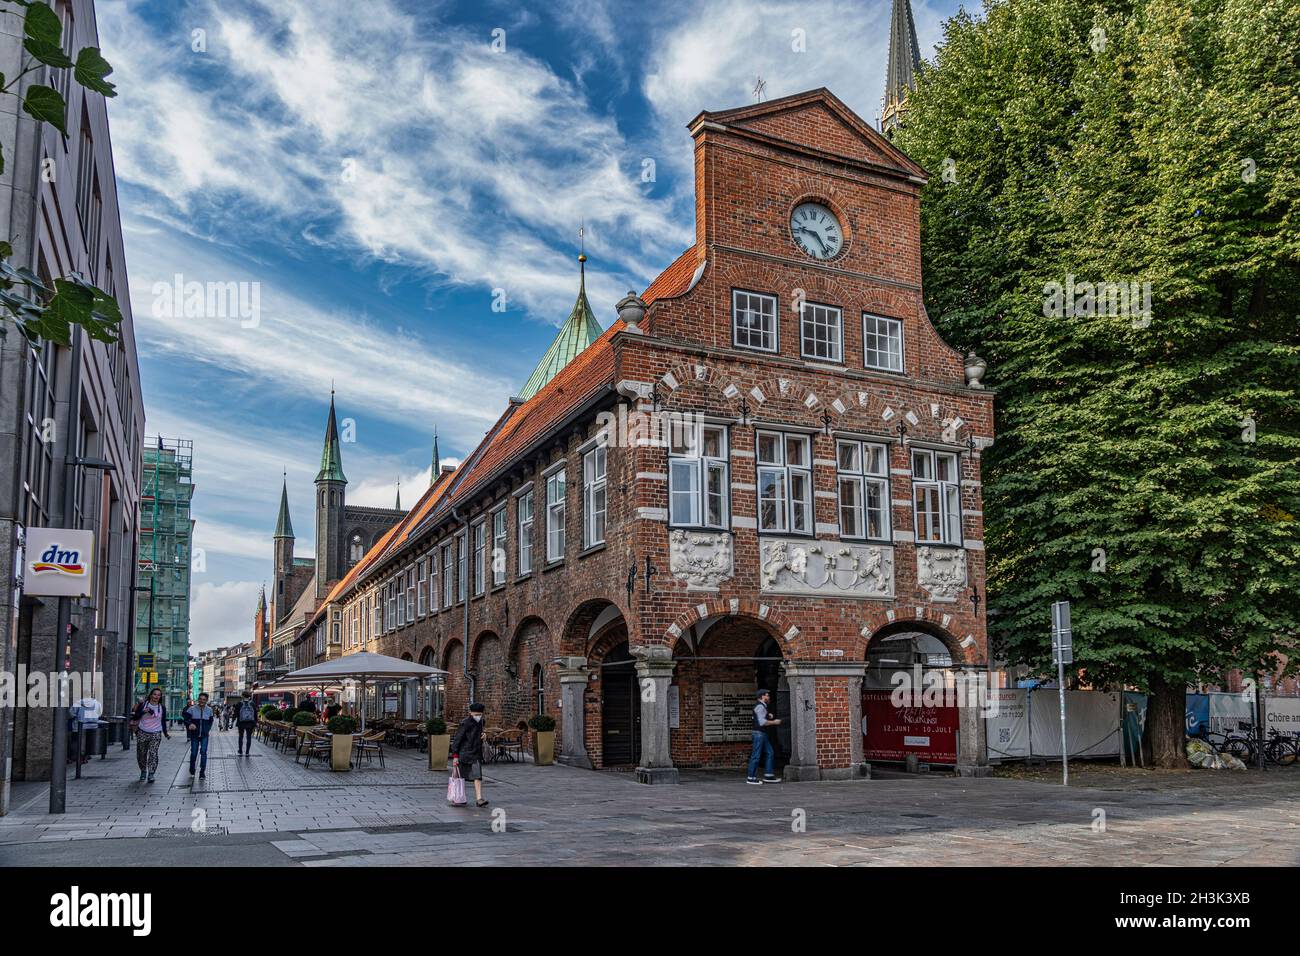 Fachada de un edificio medieval en el centro histórico de Lübeck. Lübeck, Alemania, Europa Foto de stock